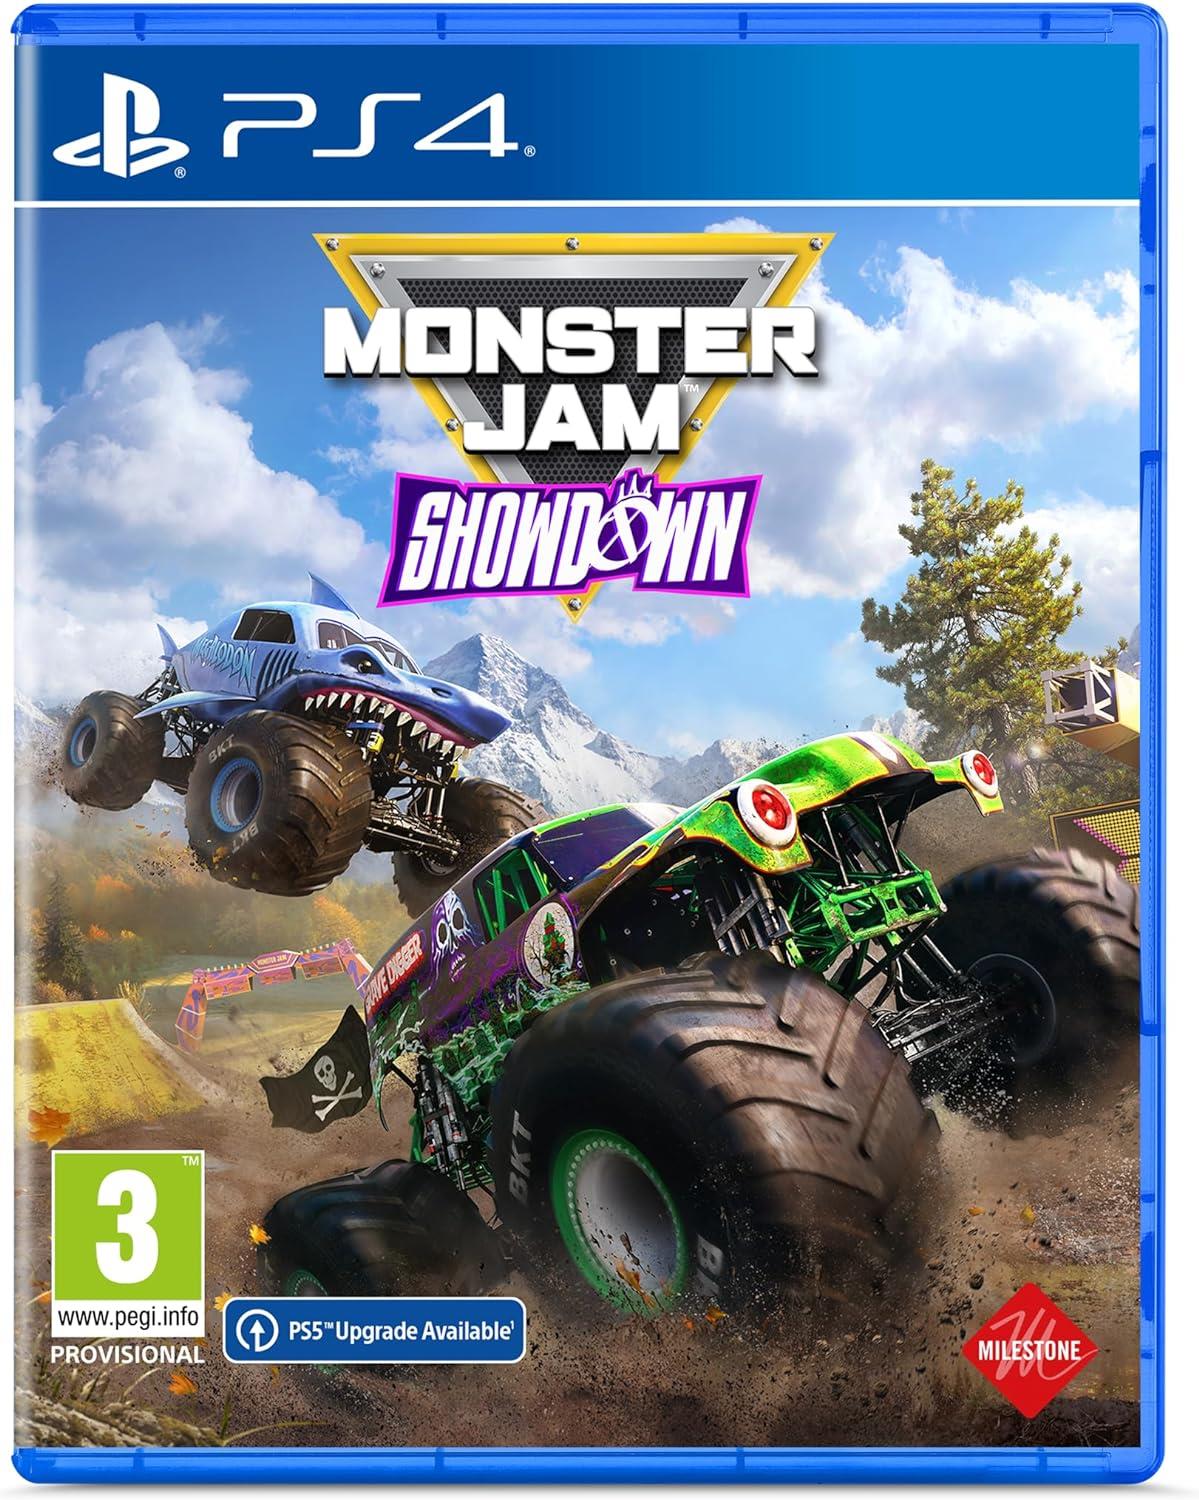 Monster Jam Showdown PS4 Game